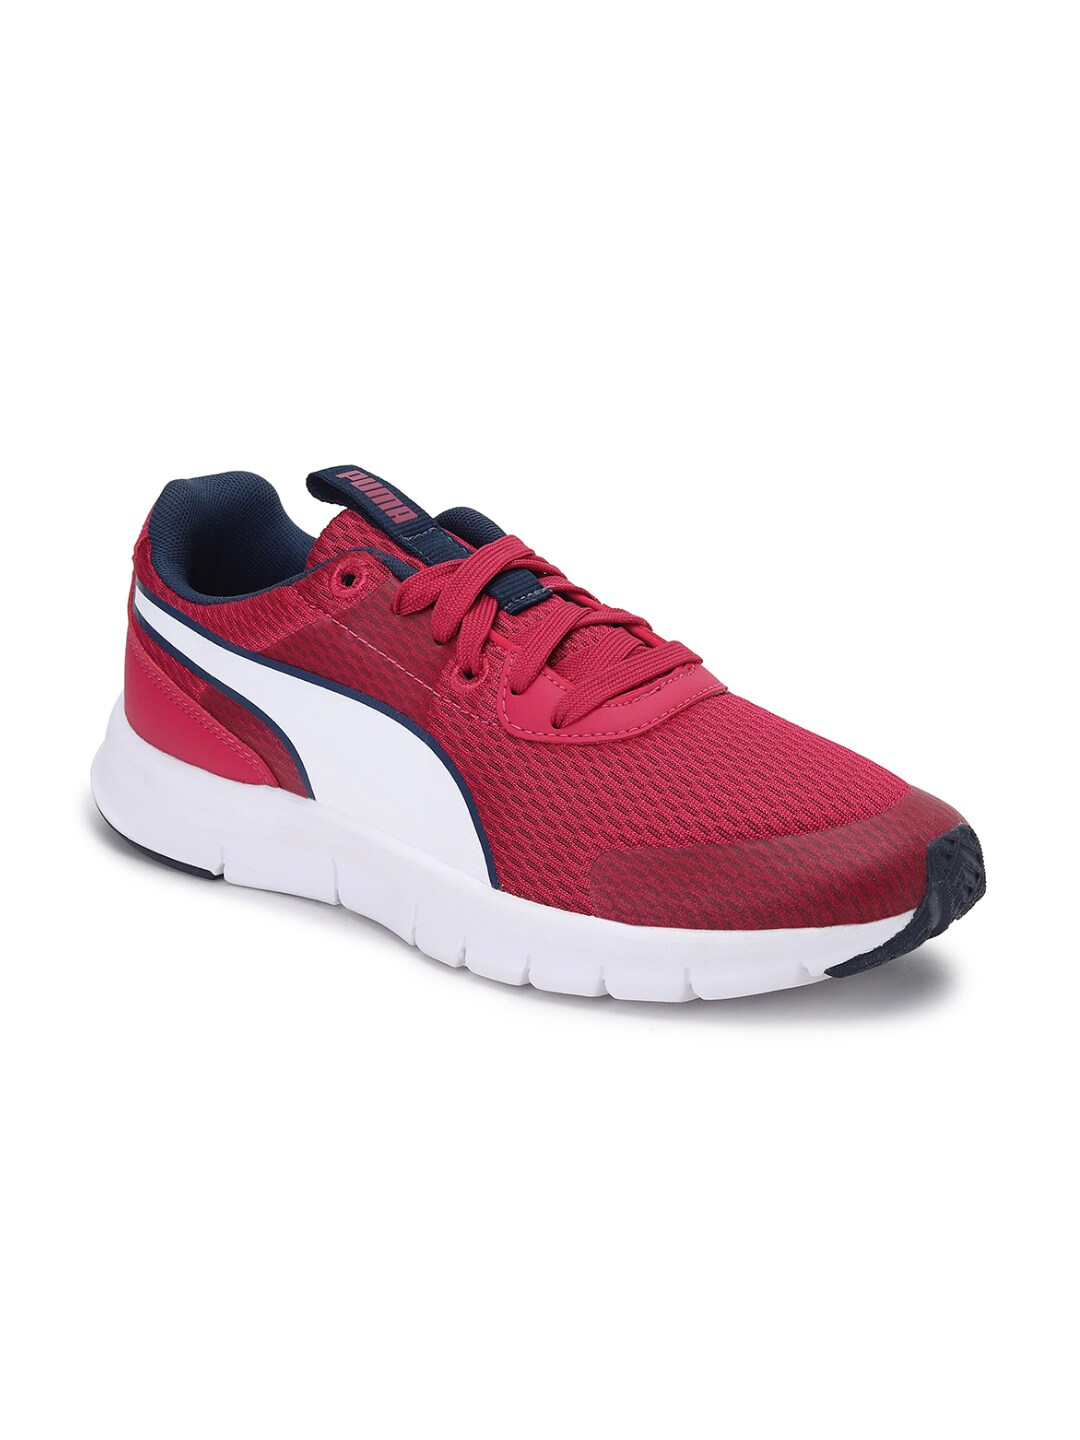 Buy Puma Women Red Mesh Running Shoes - Sports Shoes for Women 14405572 ...